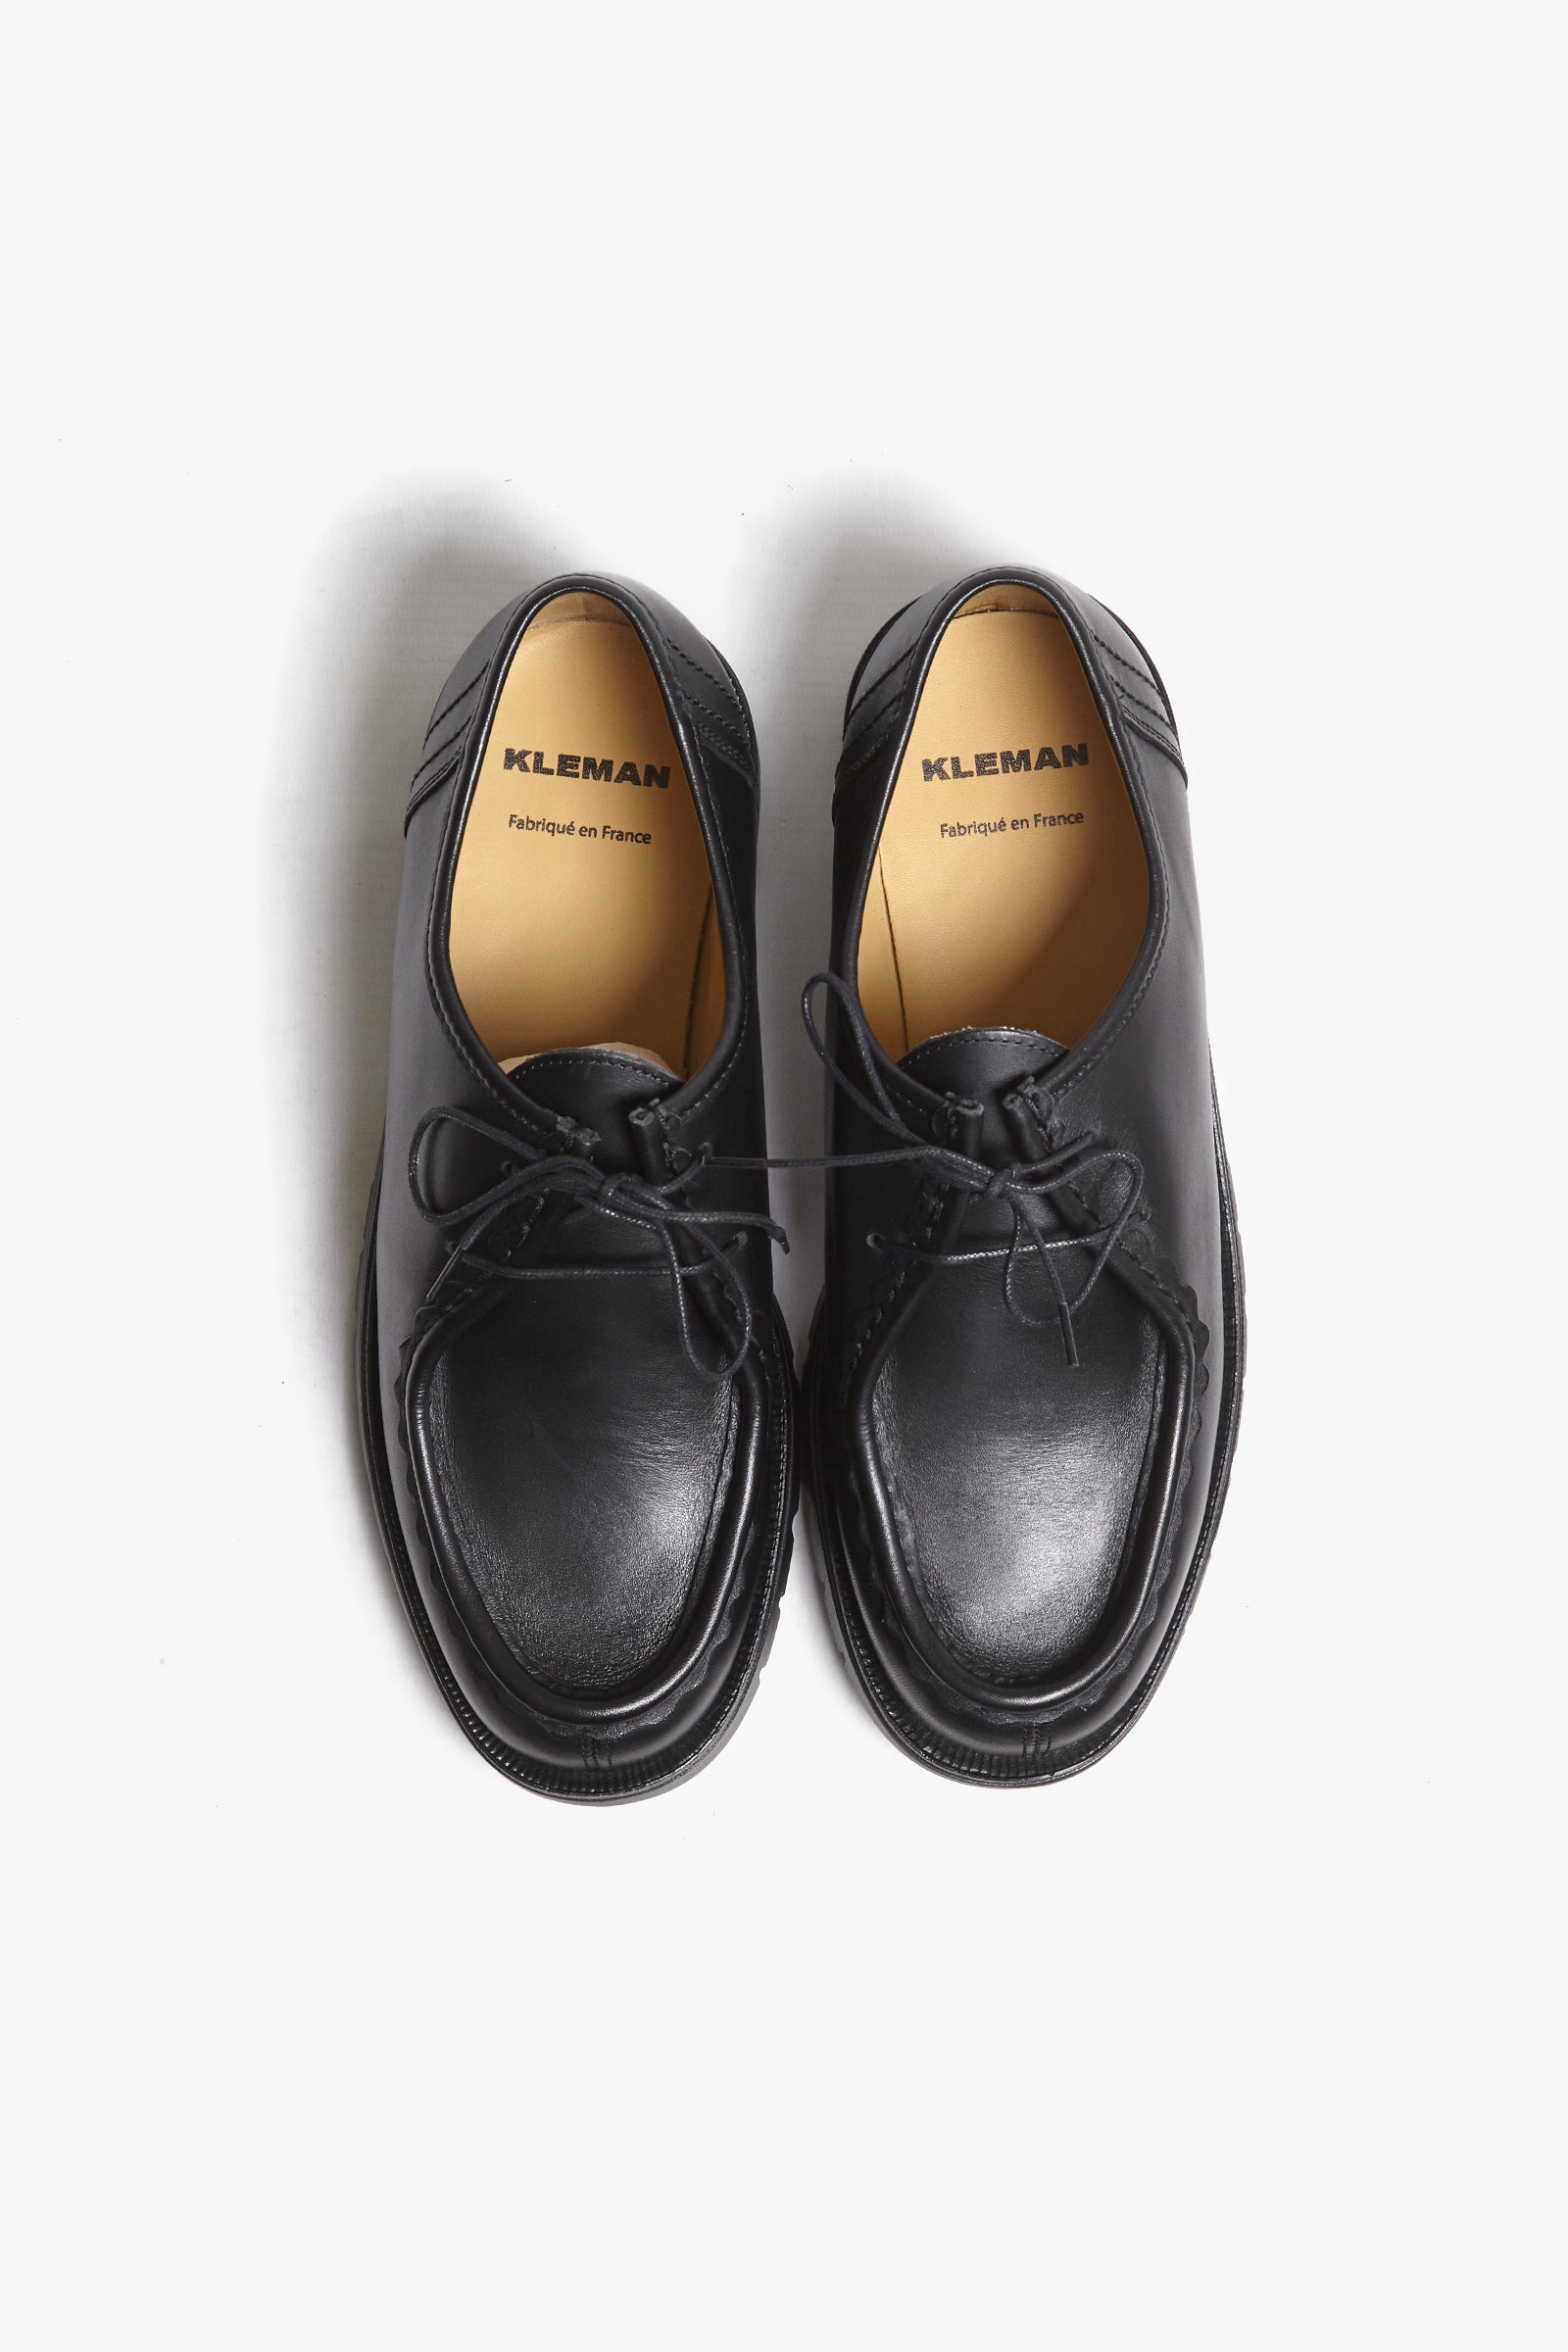 Kleman - Padror Moc Toe Shoe - Black | Blacksmith Store